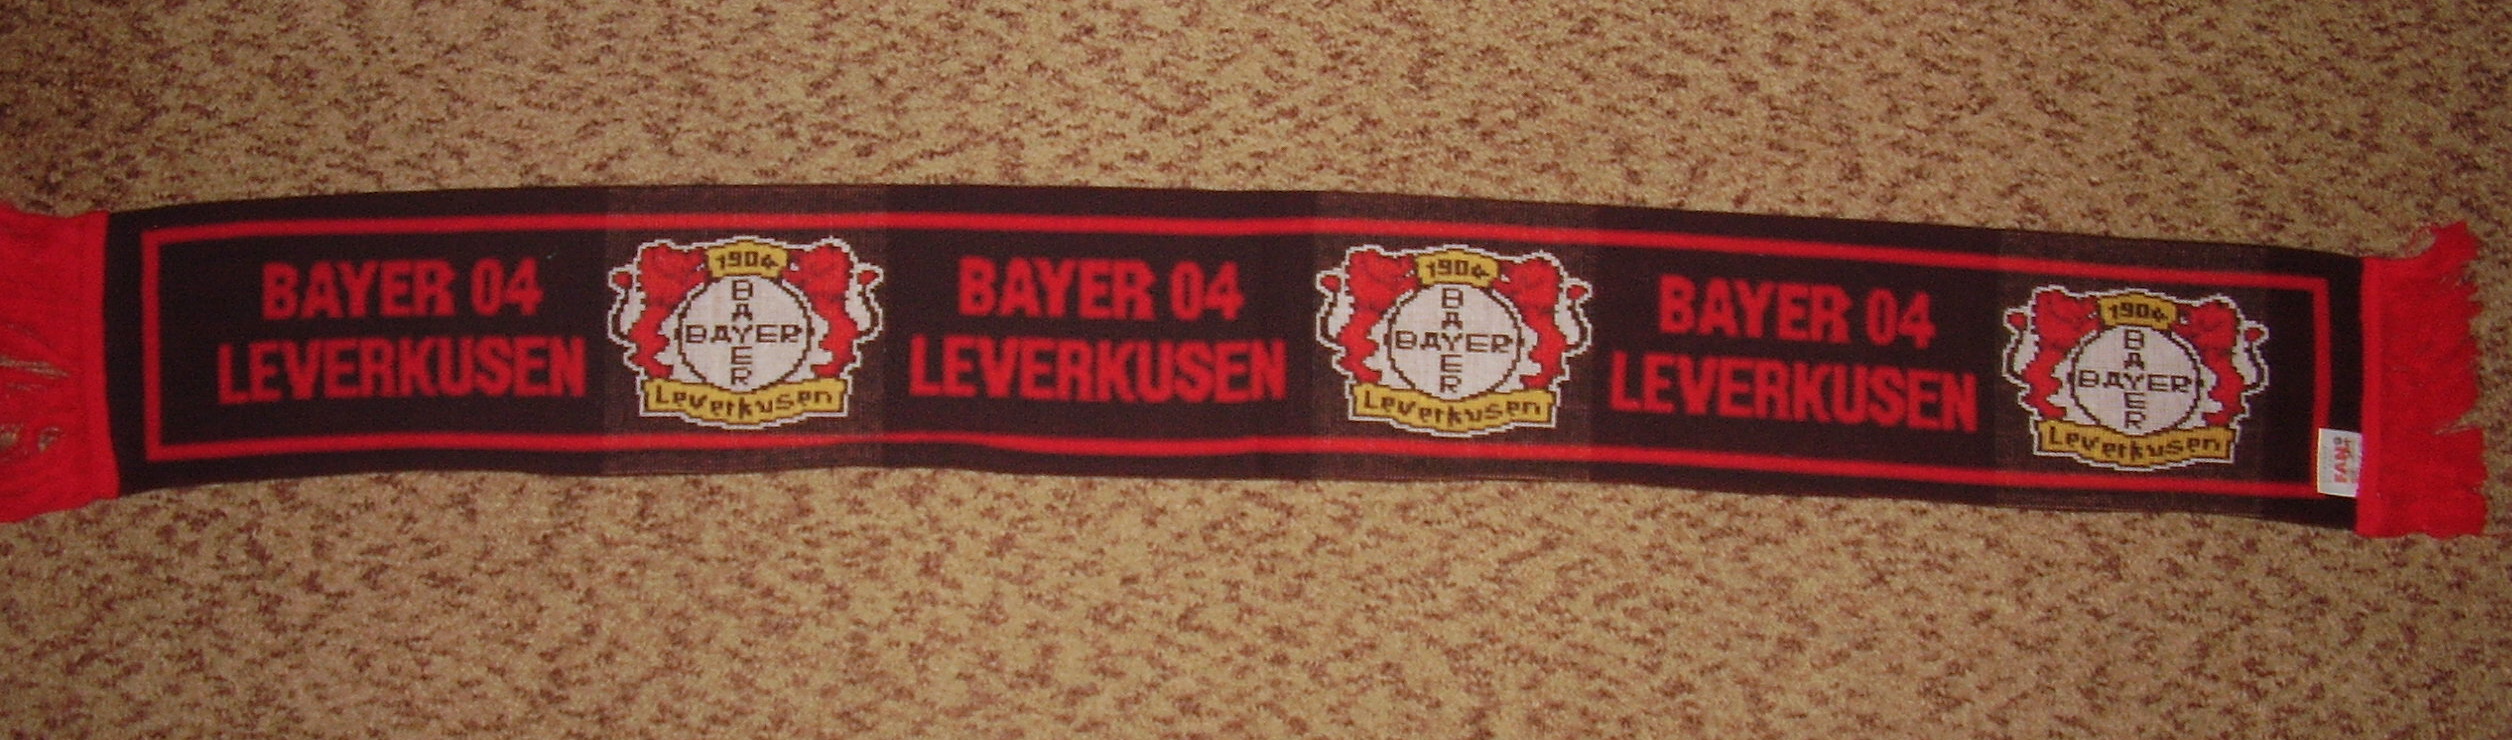 Bayer 04 Leverkusen - německá fotbalová bundesliga